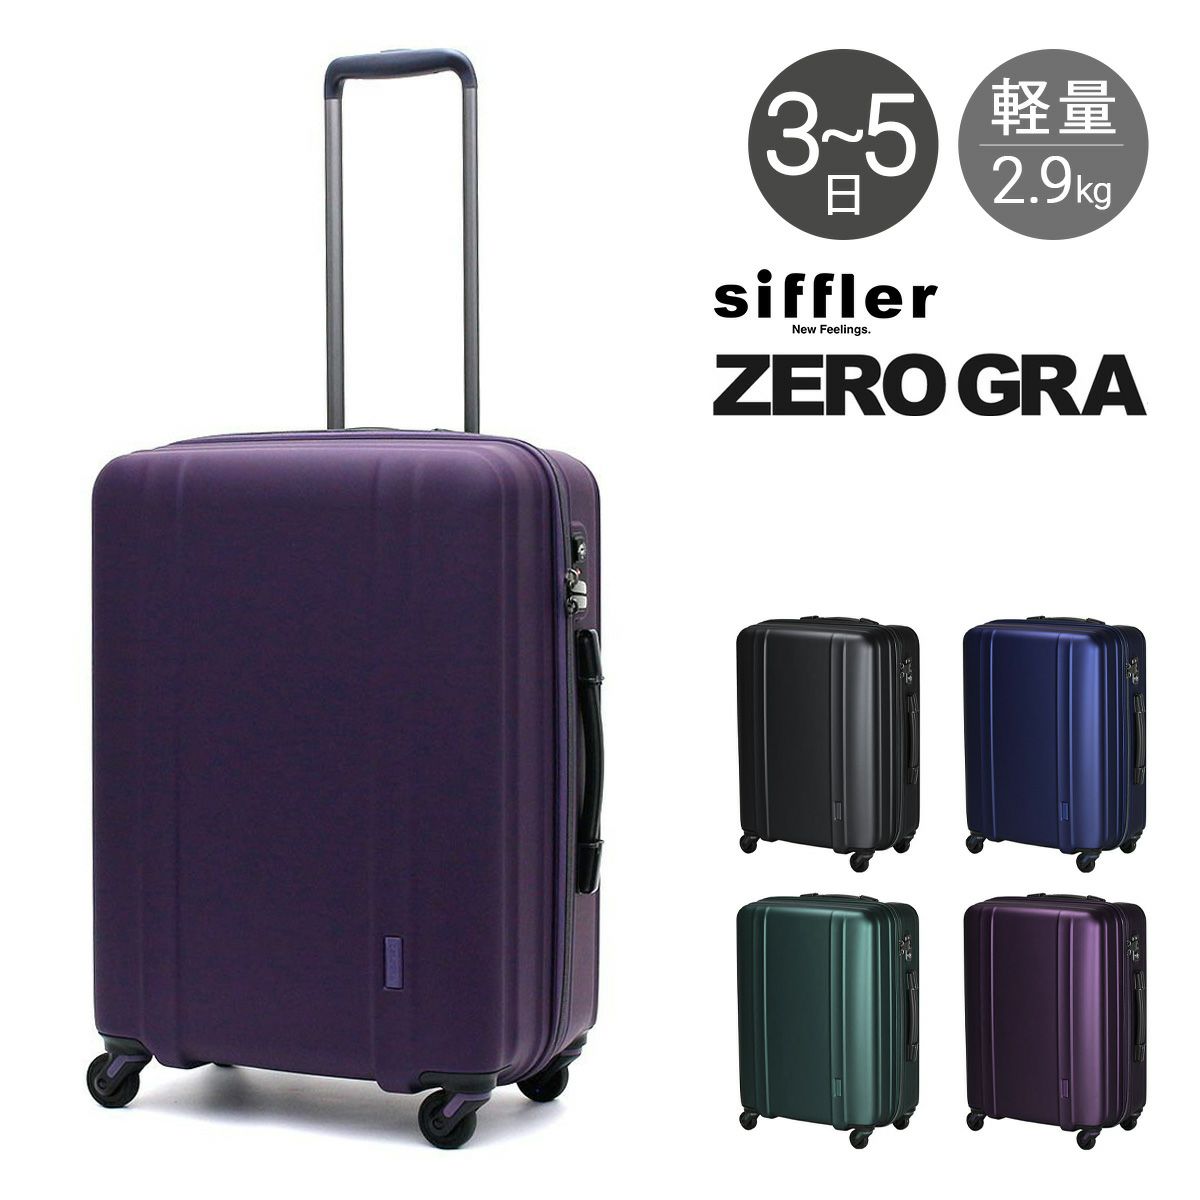 シフレ ゼログラ スーツケース 機内持ち込み 42L 46cm 2.3kg 超軽量